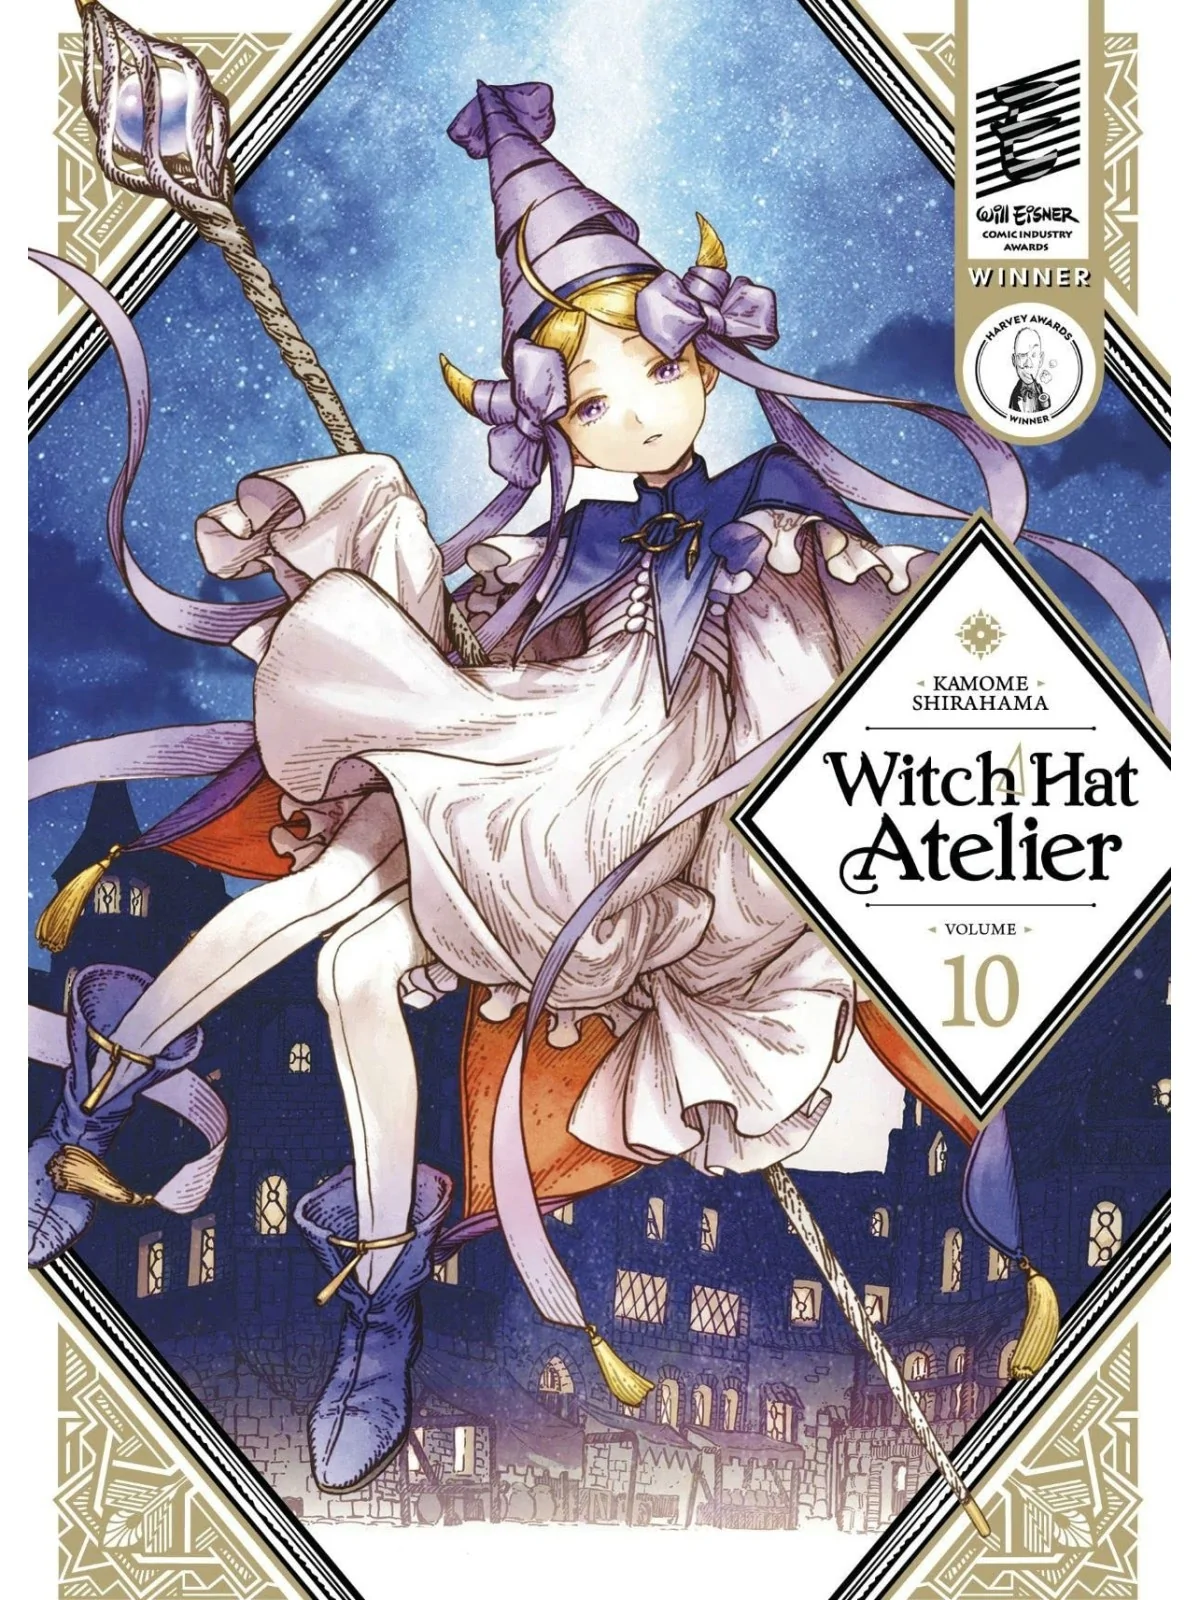 Comprar Atelier of Witch Hat N 10 barato al mejor precio 8,55 € de Mil